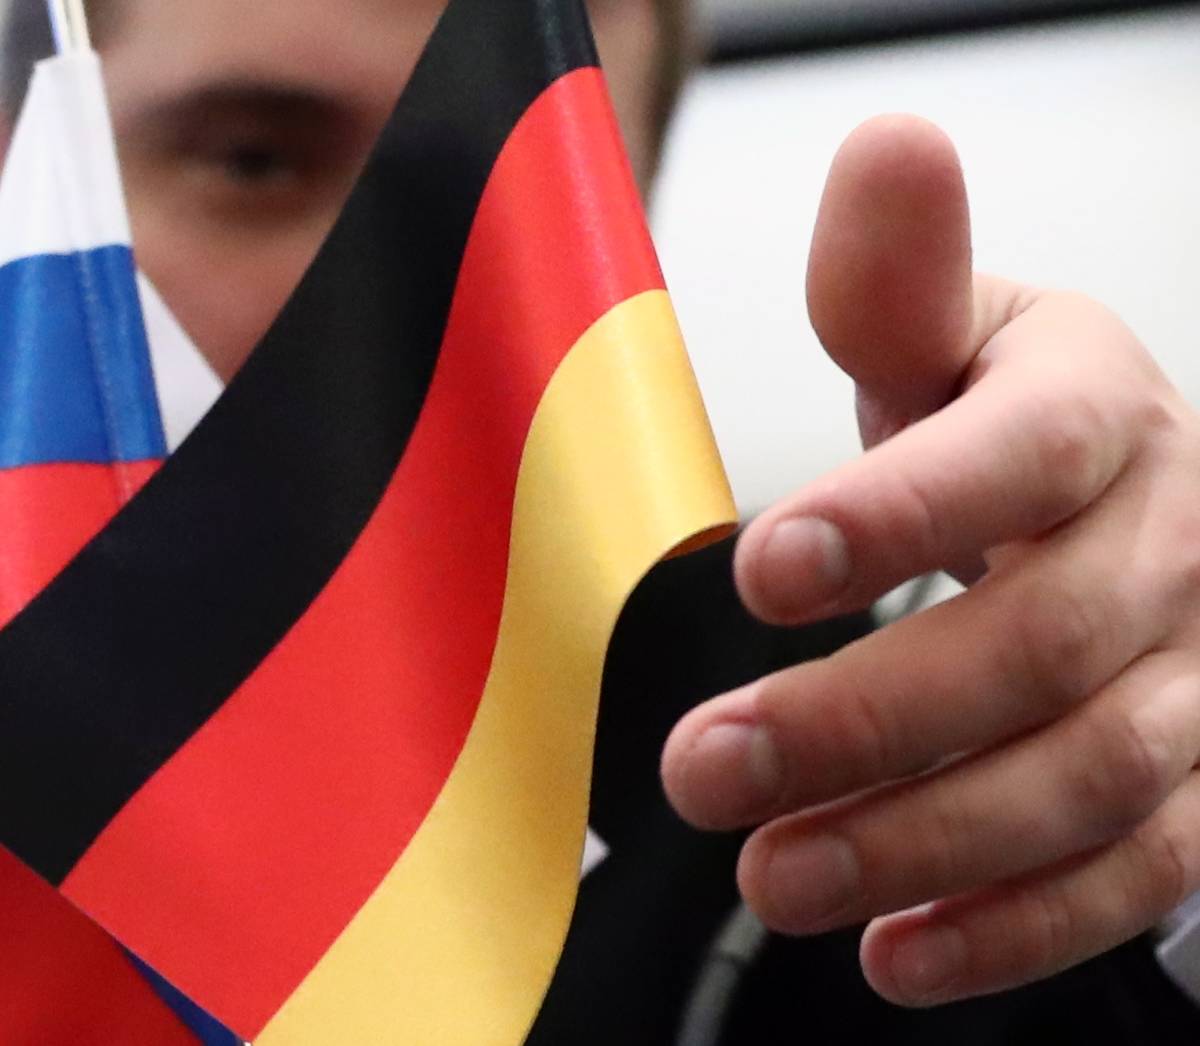 Германия выдала РФ обвиняемого в афере экс-чиновника из Подмосковья